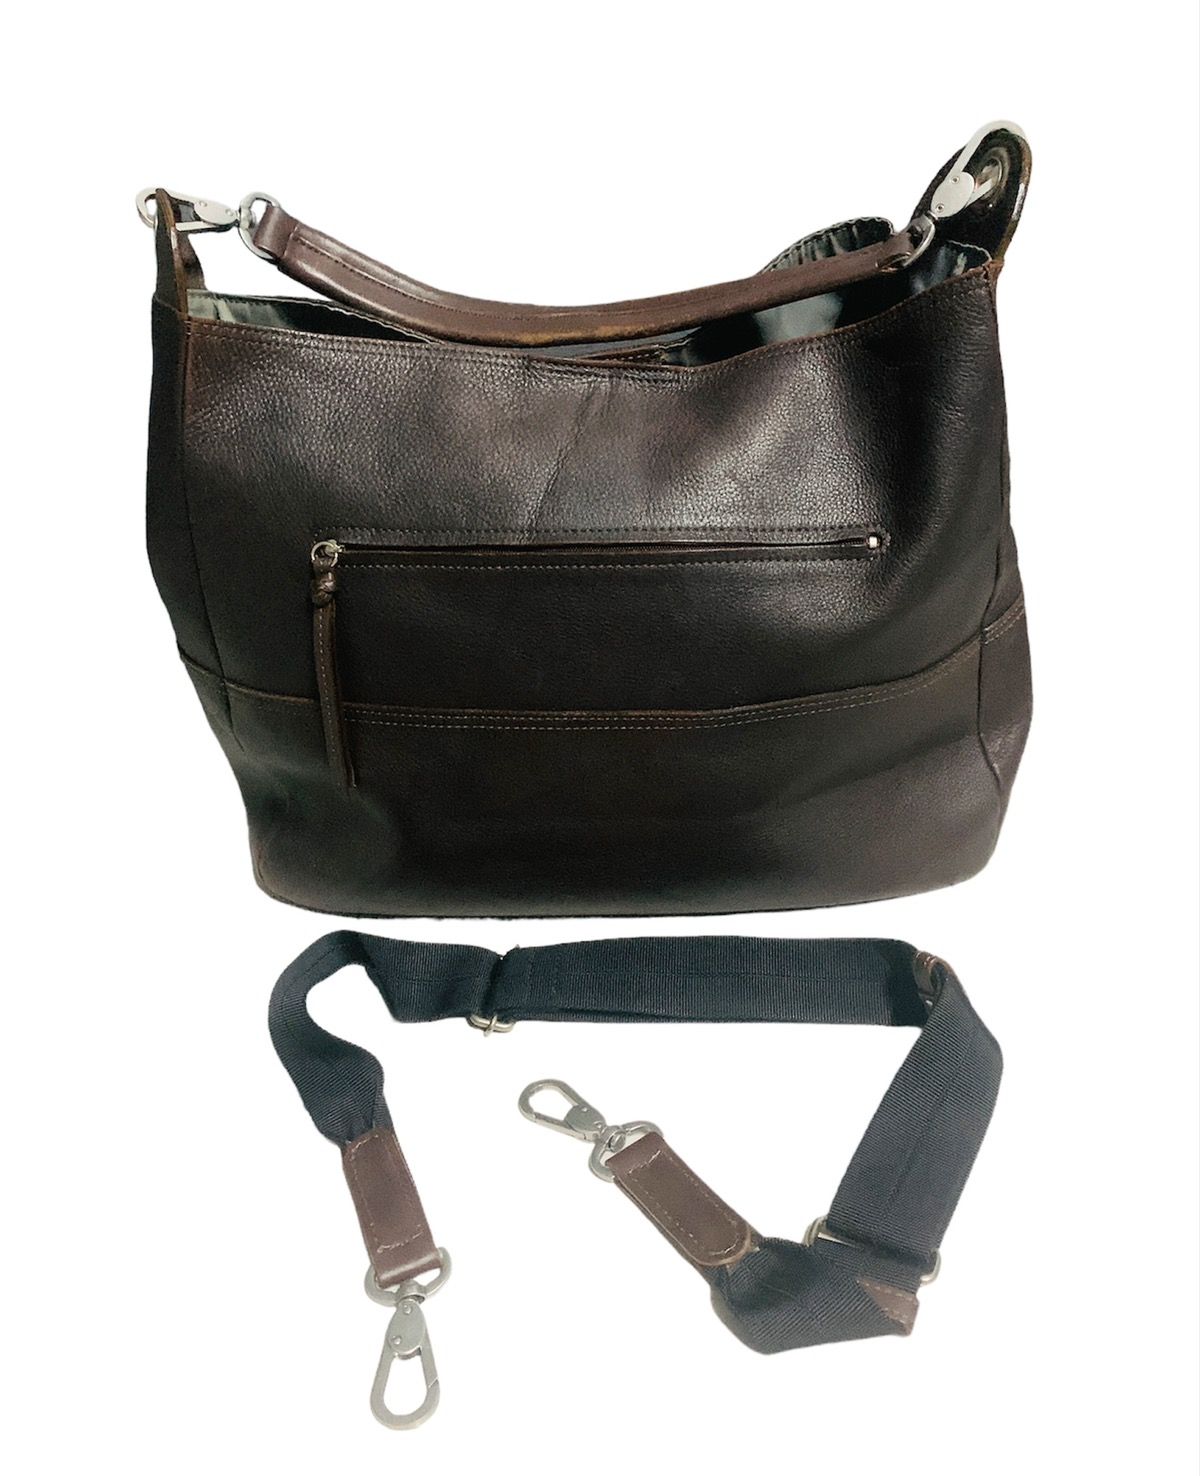 Margaret Howell Margaret Howell brown leather sling/shoulder bag Size ONE SIZE - 1 Preview